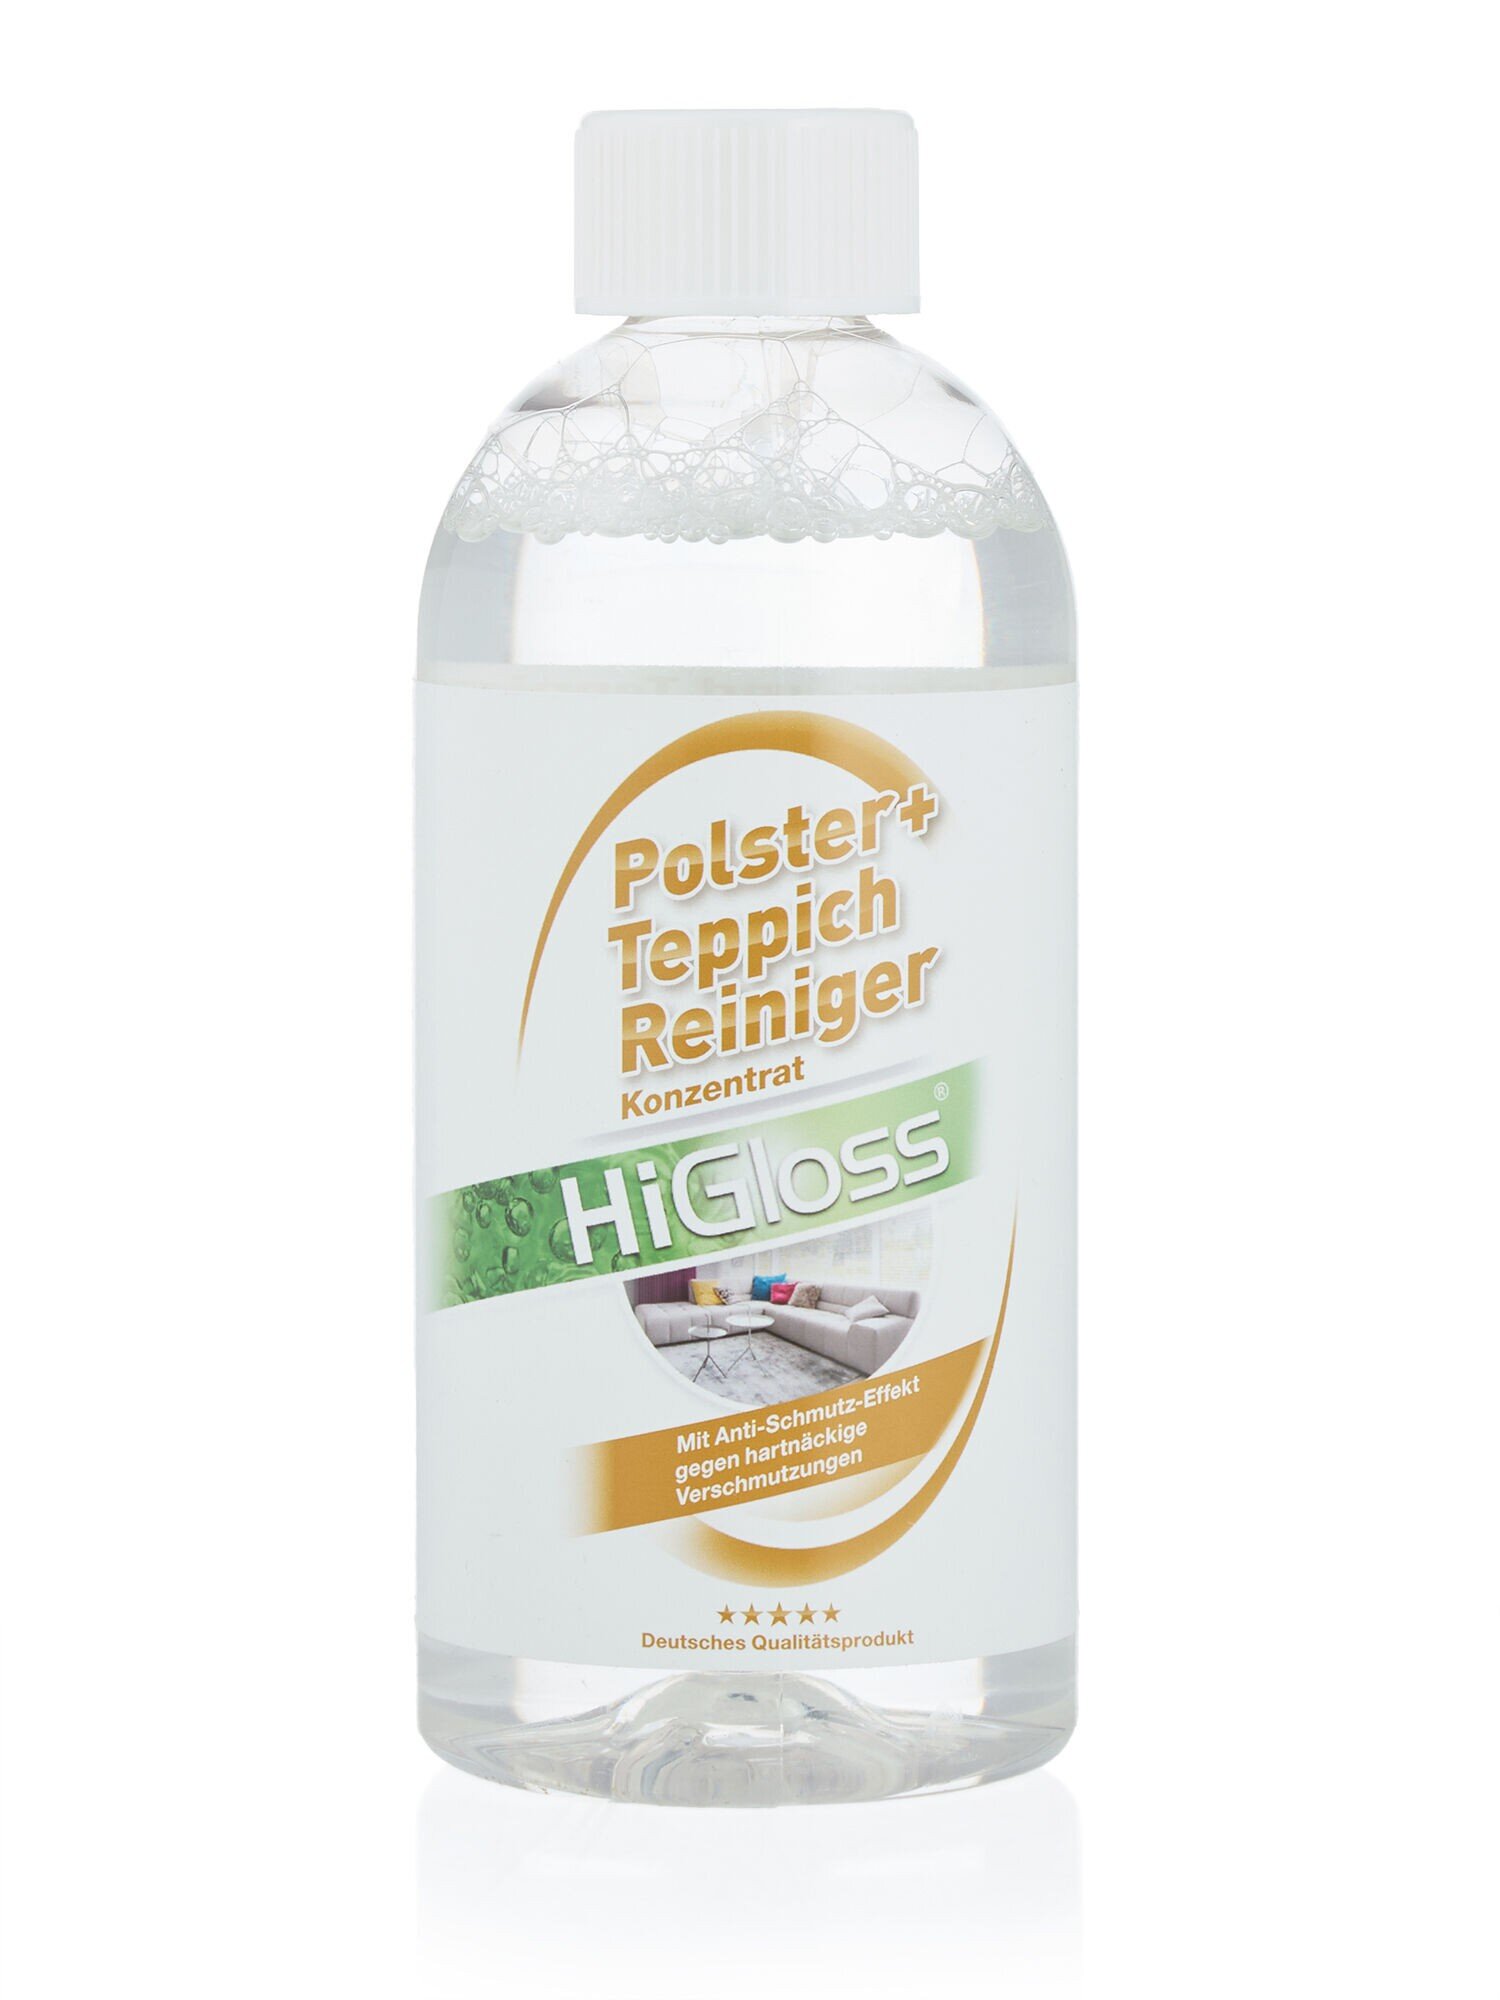 Polster- und Teppichreiniger Set, 5-teilig - Produkte - HiGloss - Marken